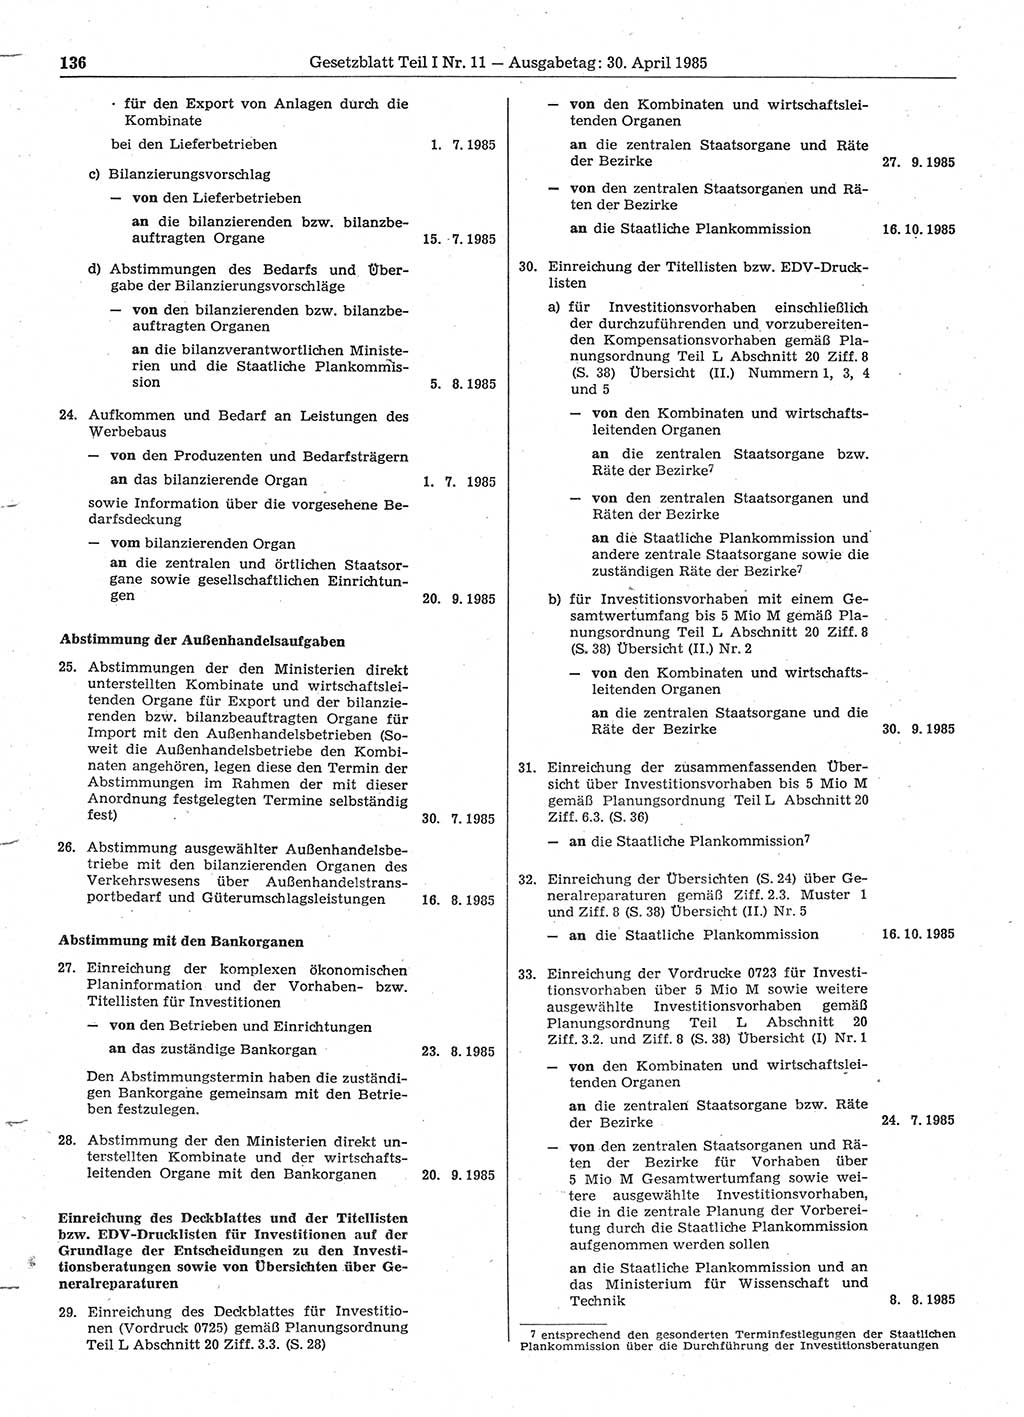 Gesetzblatt (GBl.) der Deutschen Demokratischen Republik (DDR) Teil Ⅰ 1985, Seite 136 (GBl. DDR Ⅰ 1985, S. 136)